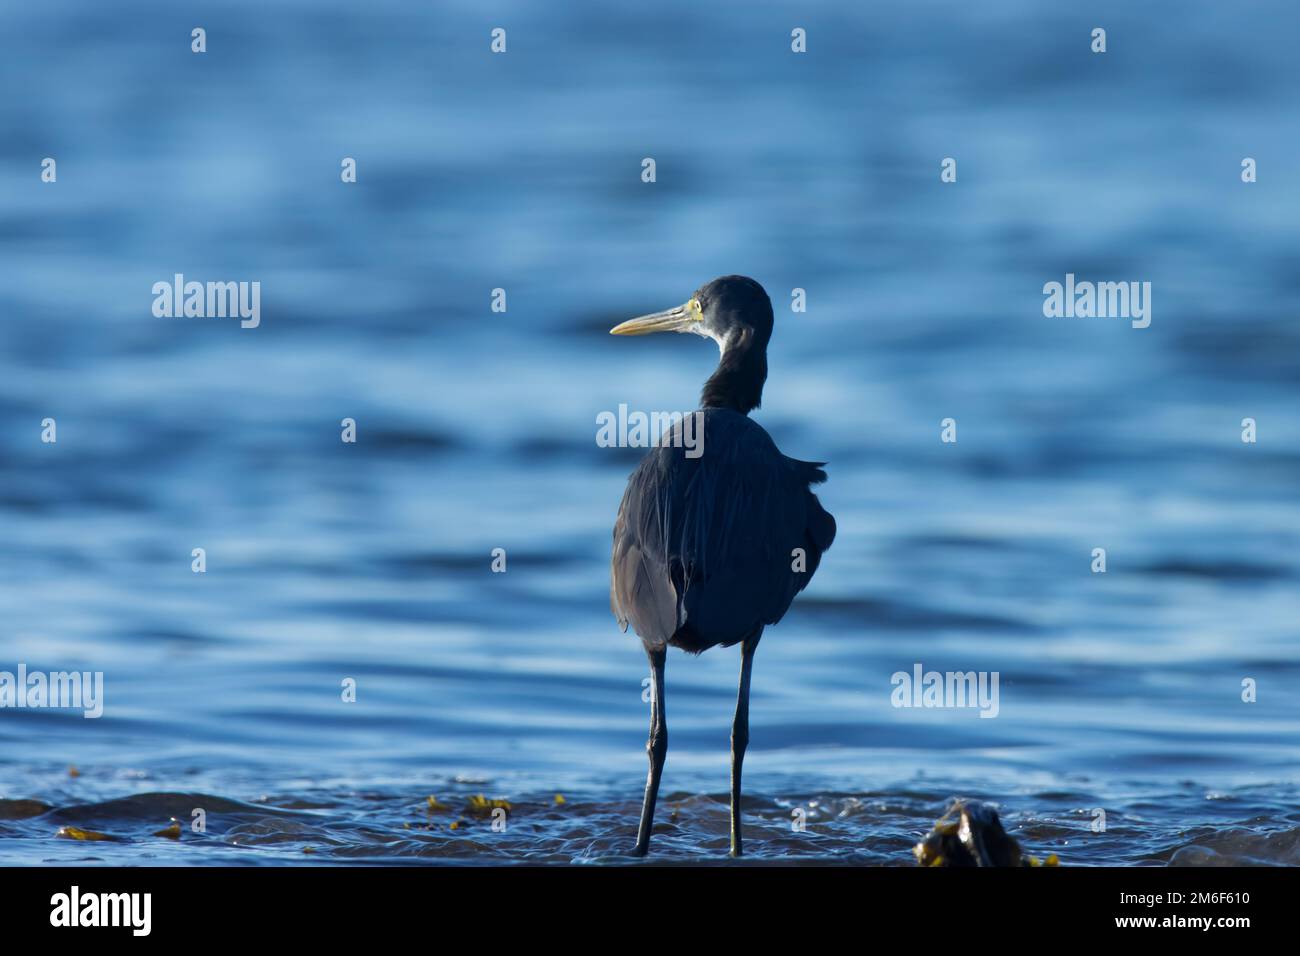 Egret wading in the ocean water. Water bird. Stock Photo